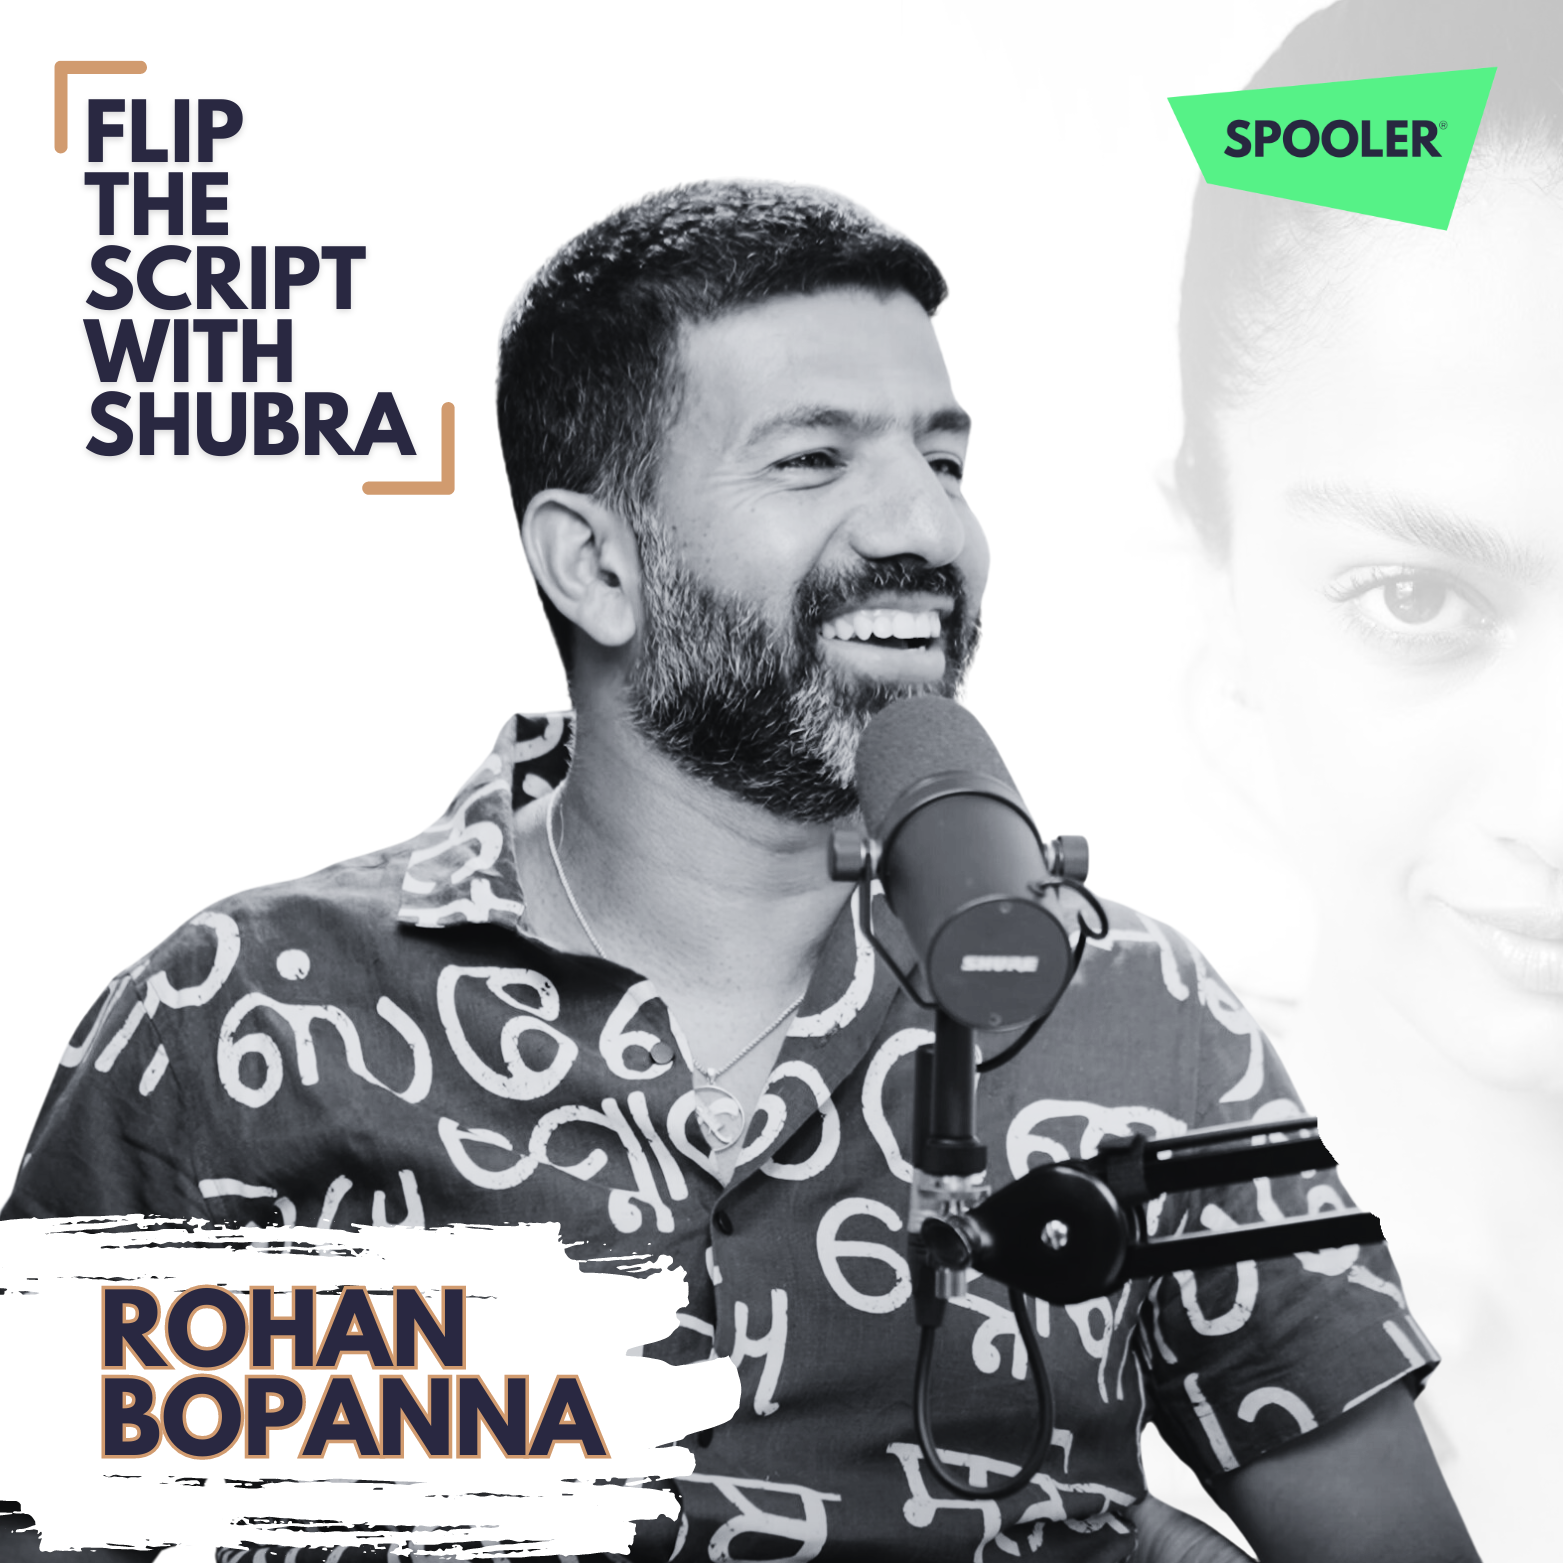 Rohan Bopanna